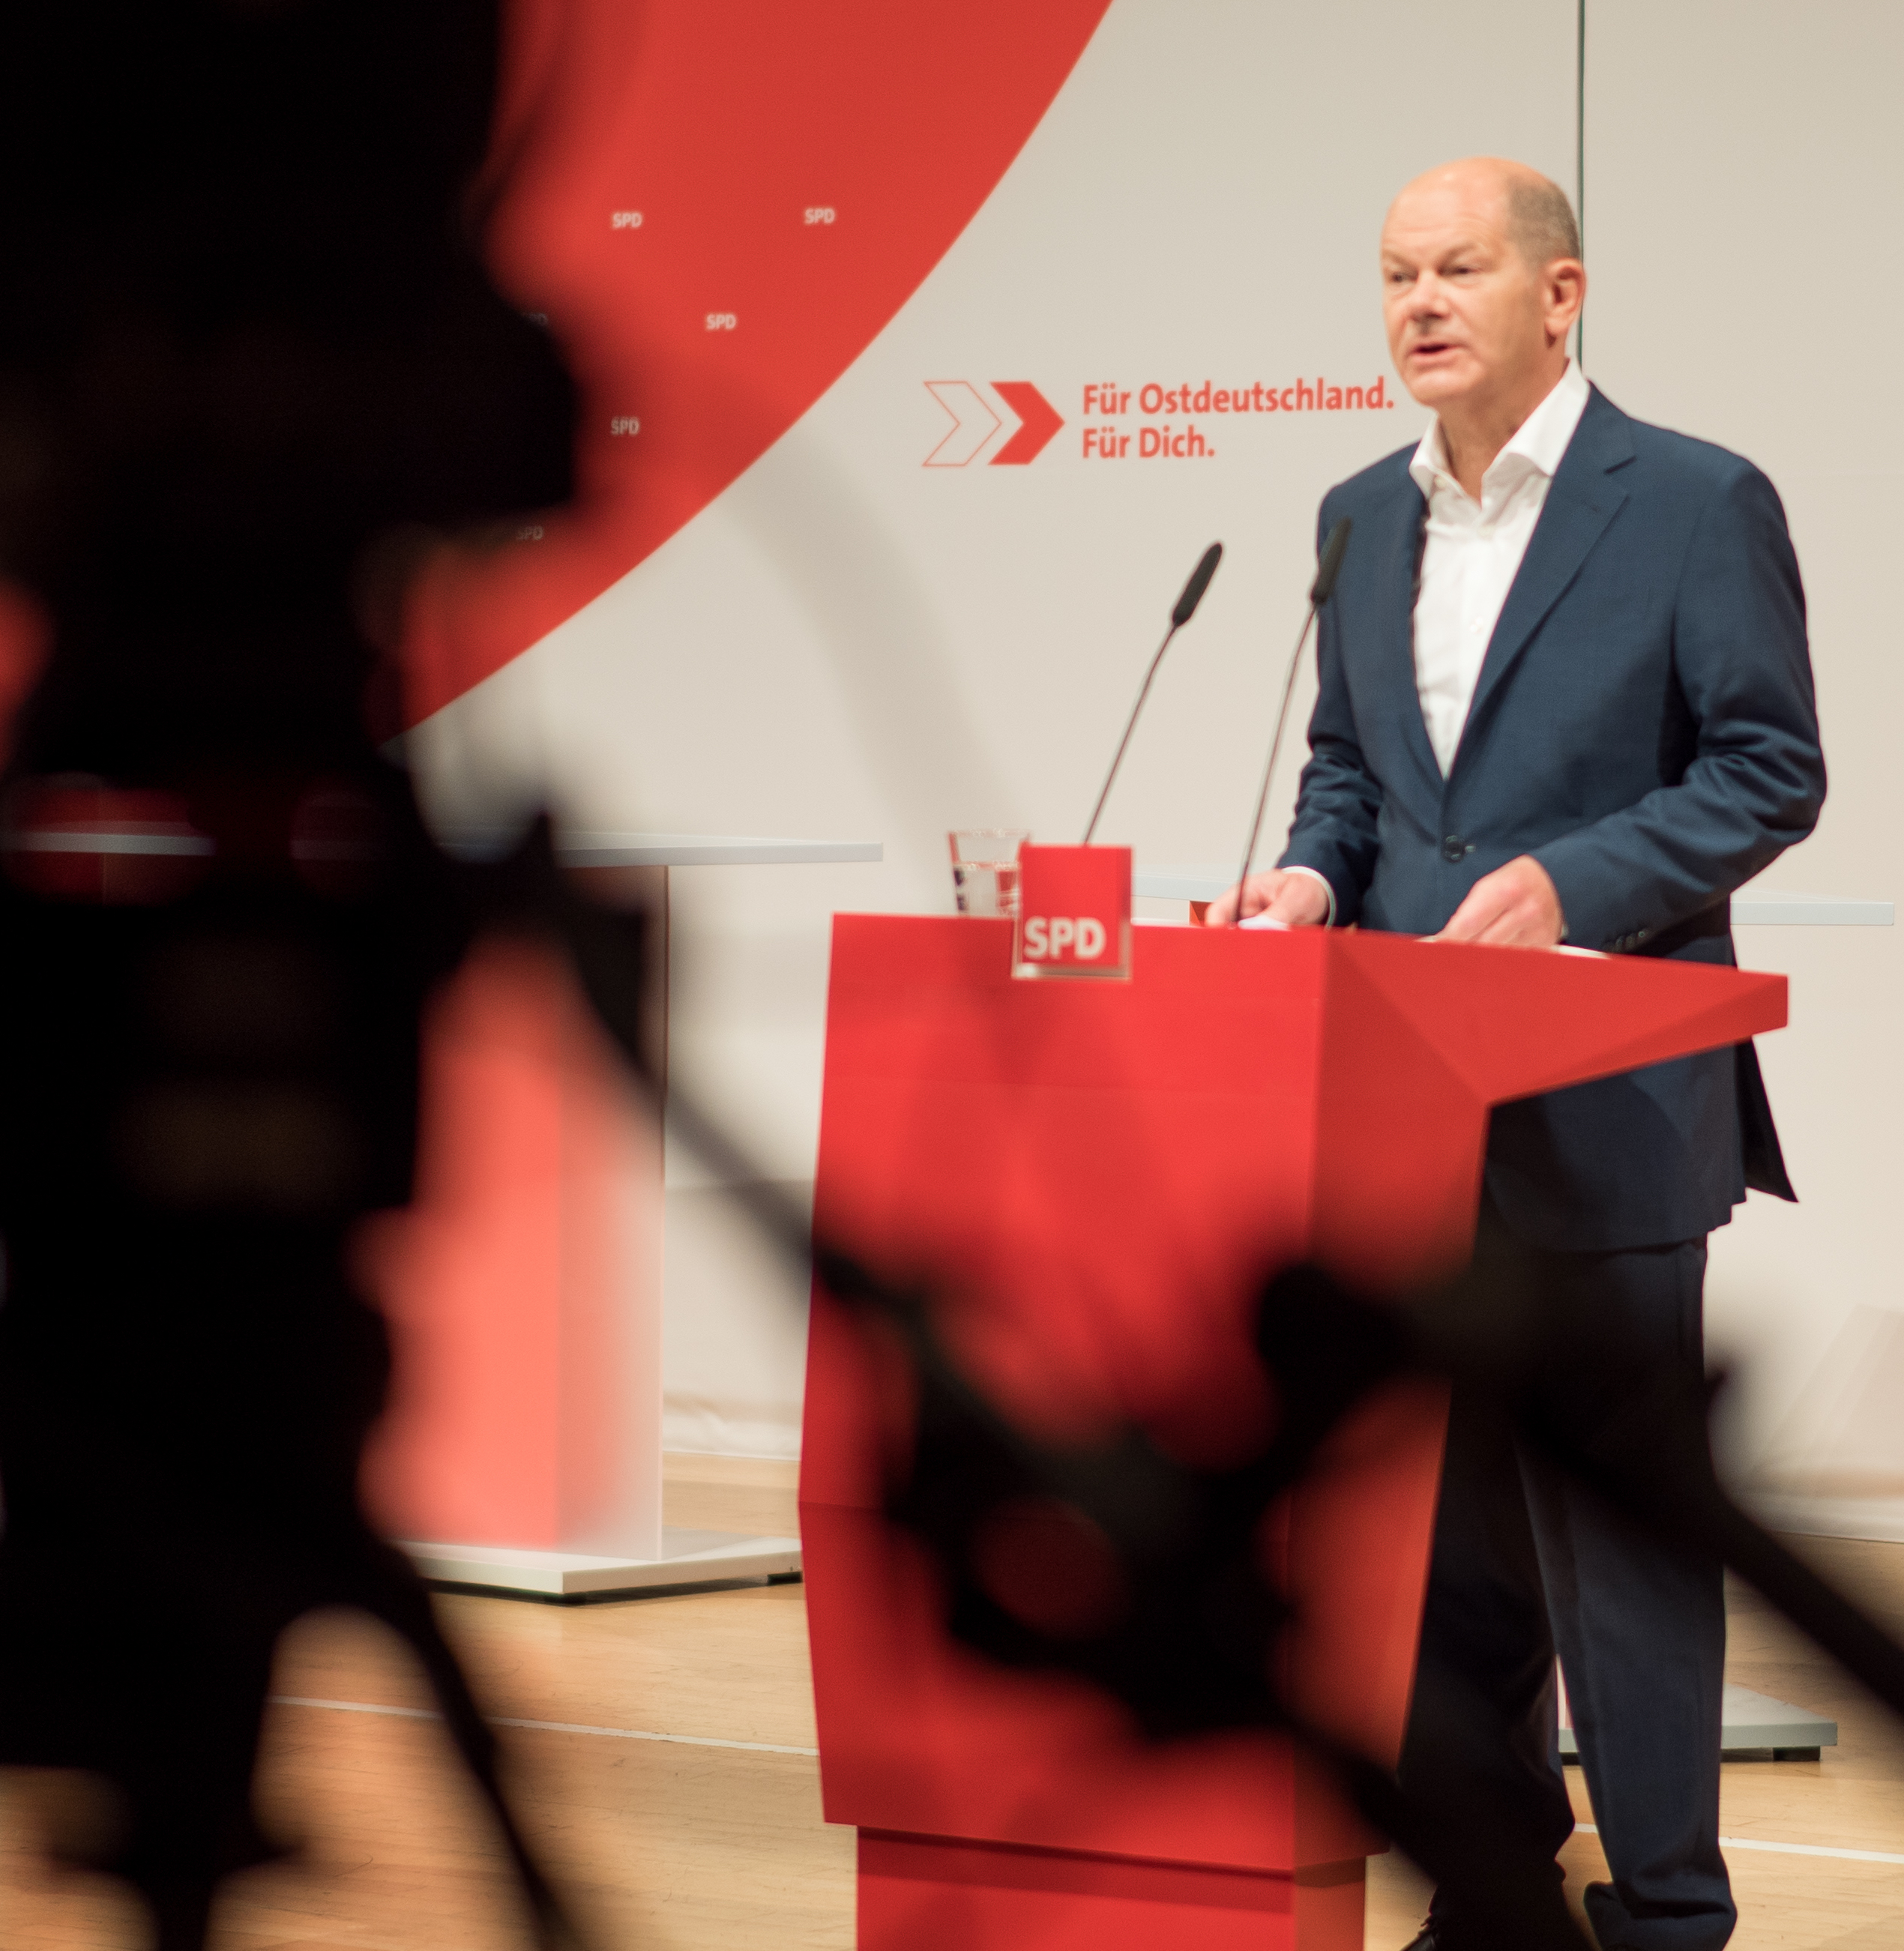 Foto: Olaf Scholz spricht beim SPD-Ostkonvent